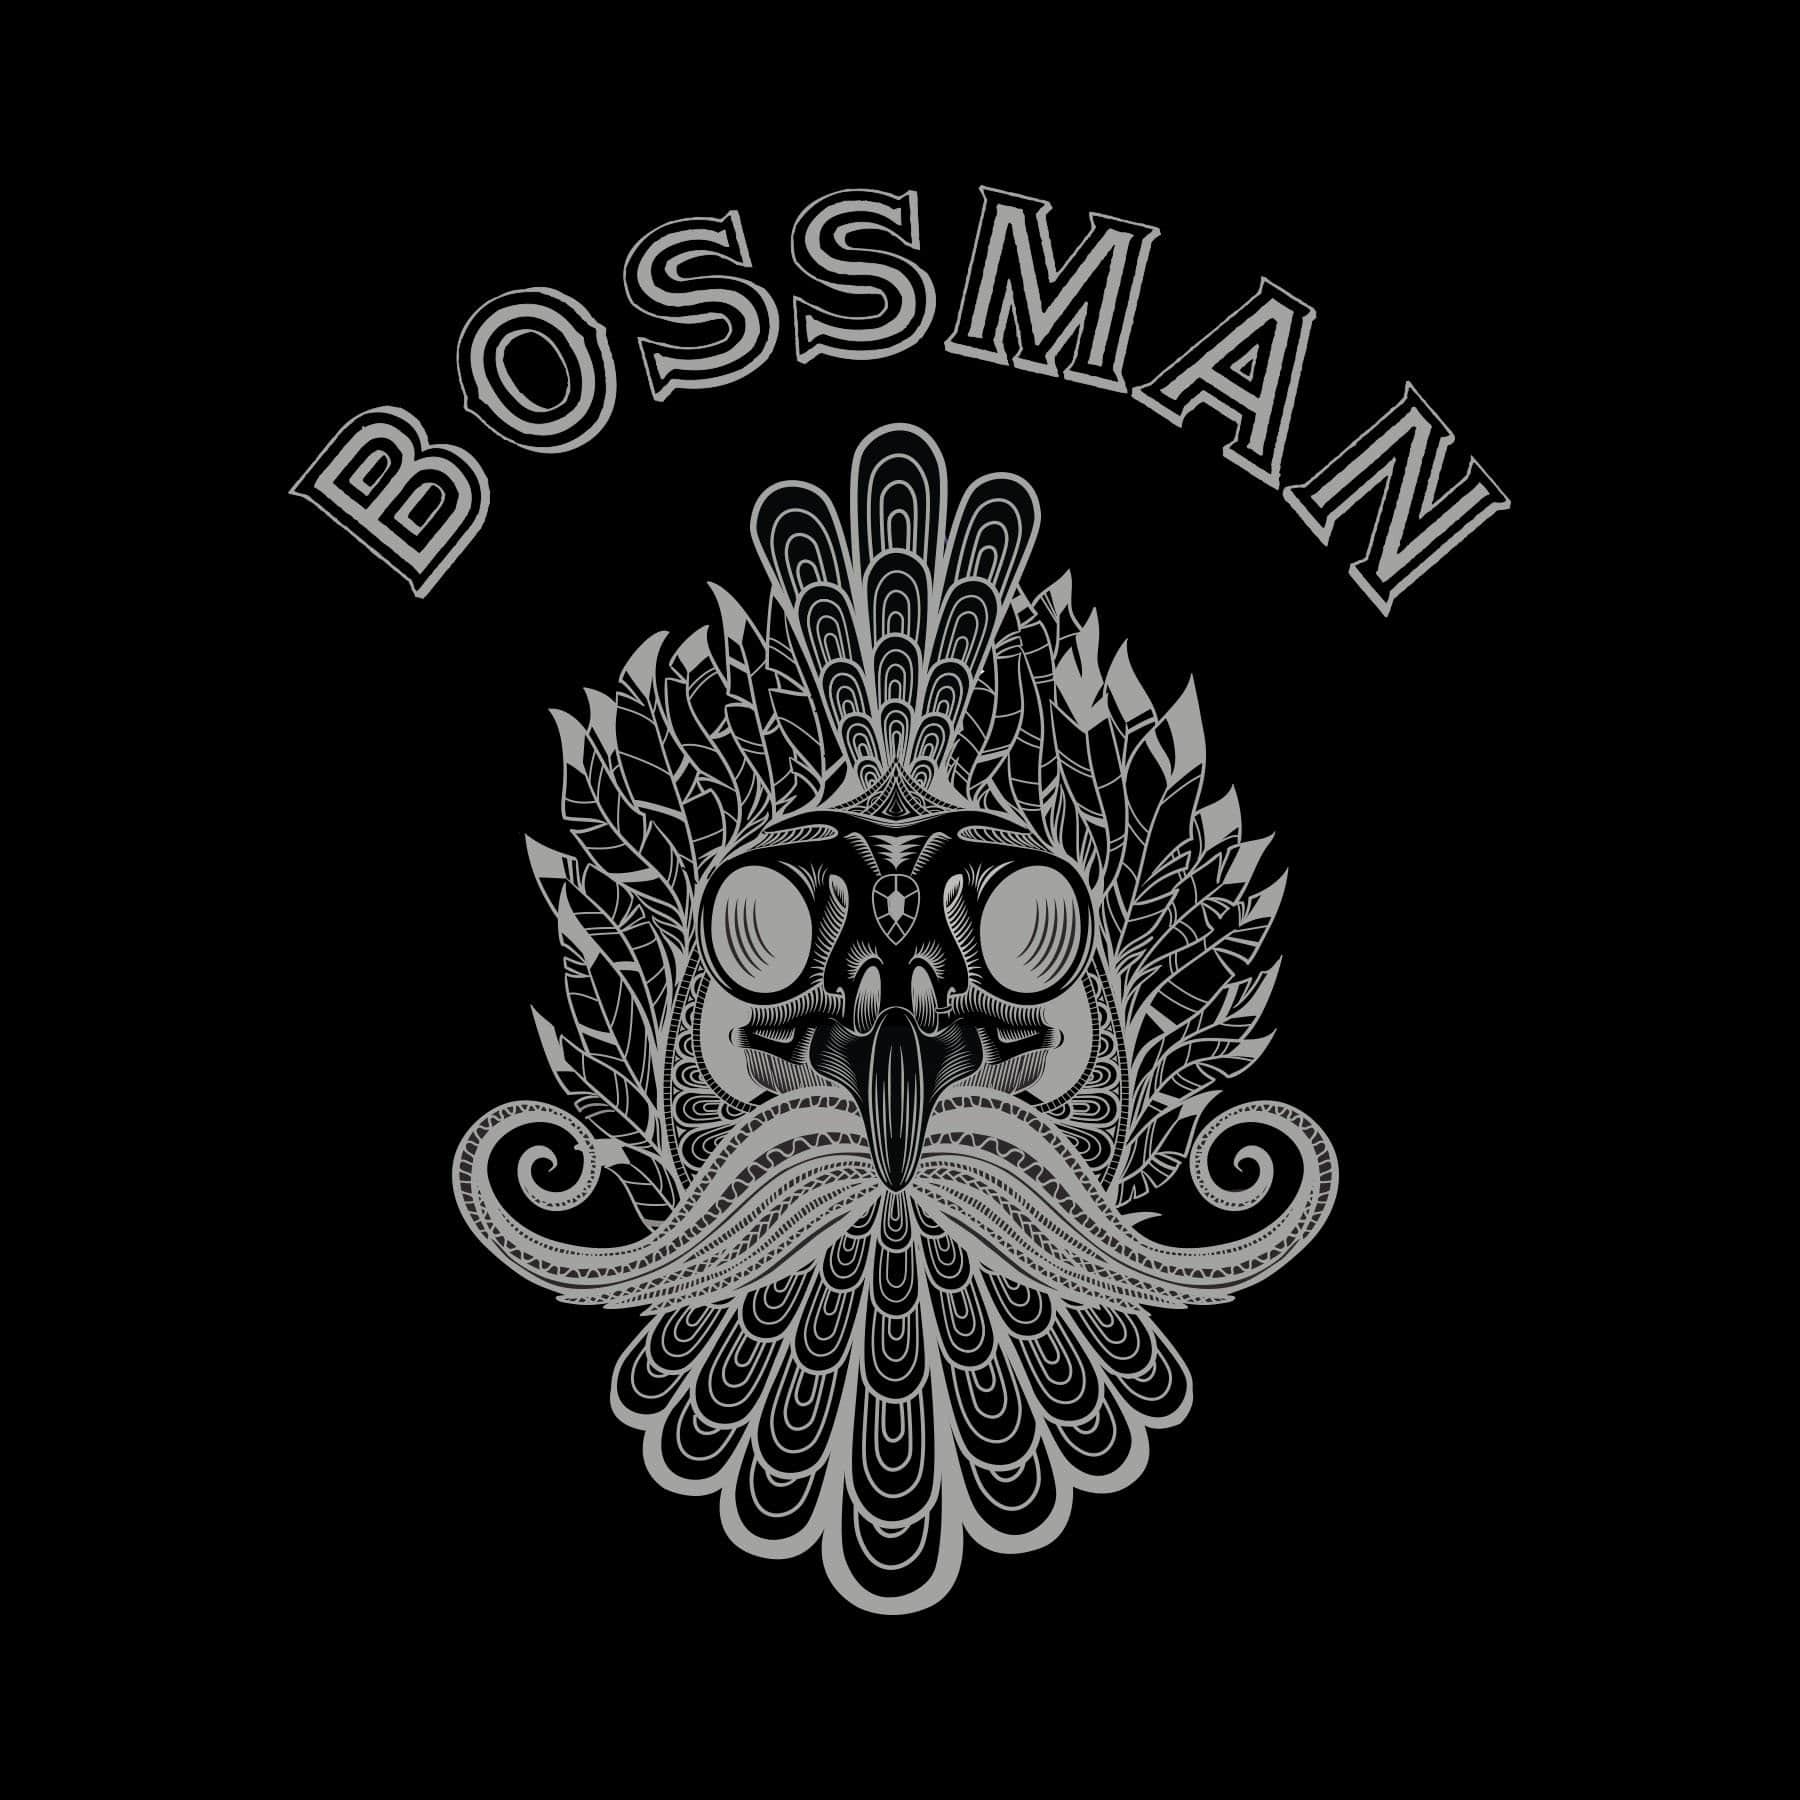 Bossman Rooster Skull Black Tee Shirt Bossman Brands